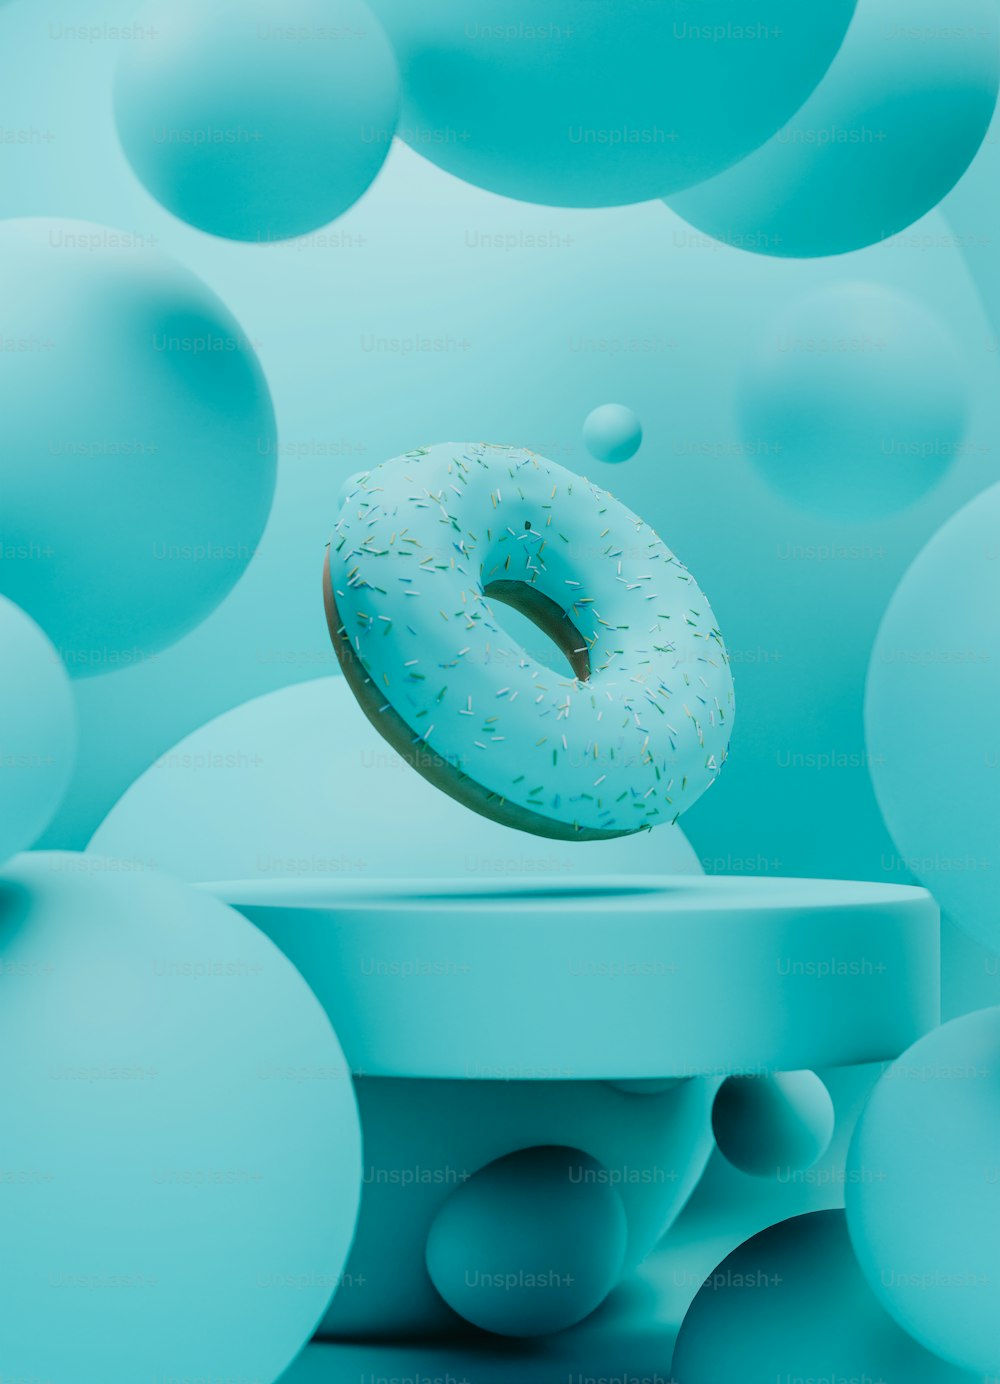 Ein Donut, der auf einem Tisch sitzt, umgeben von blauen Kugeln